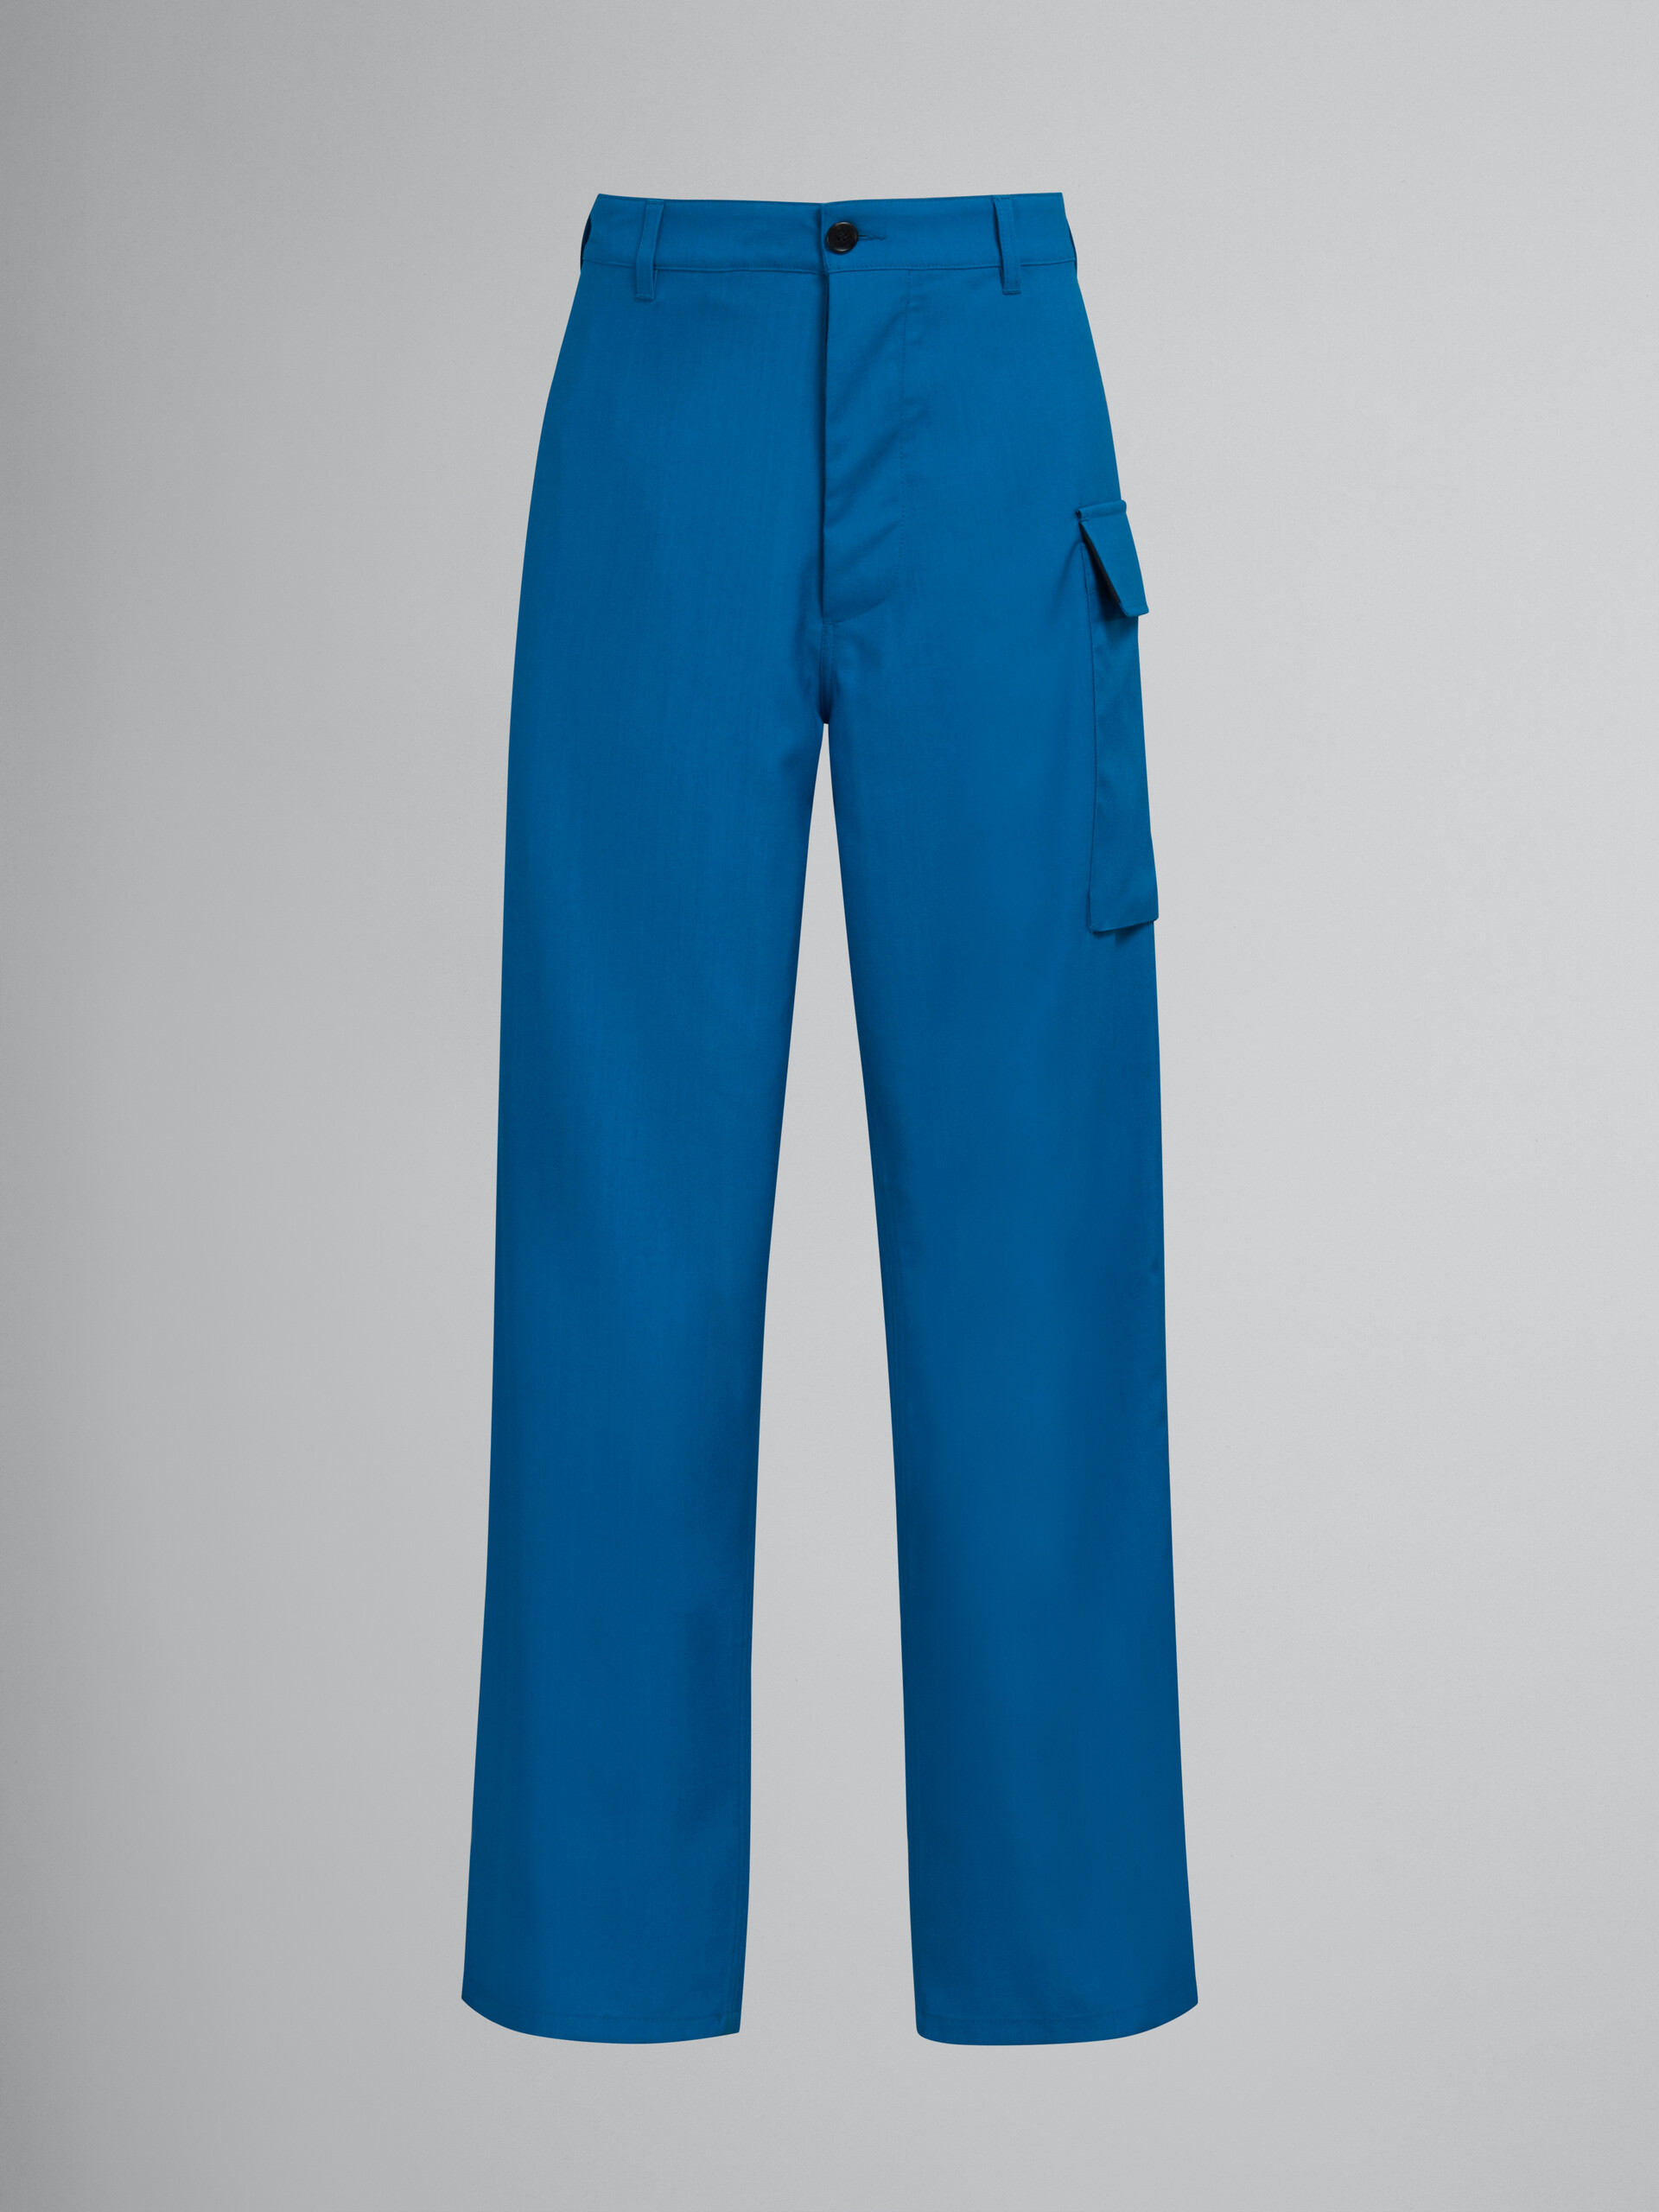 Pantalon en laine tropicale bleu sarcelle avec poche utilitaire - Pantalons - Image 1